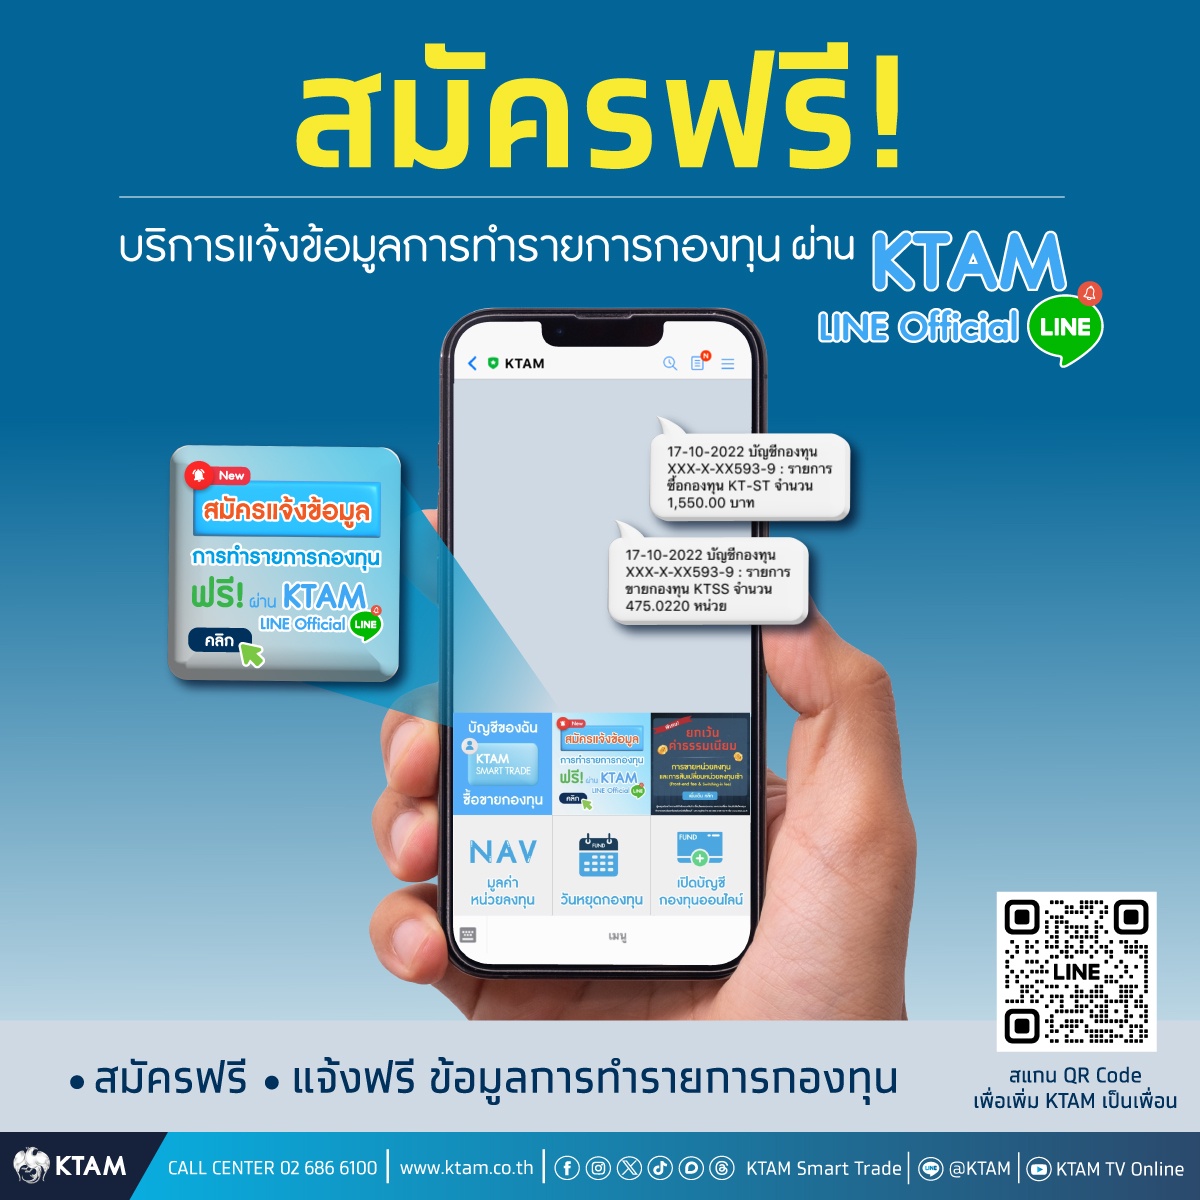 KTAM เปลี่ยนการลงทุนให้เป็นเรื่องง่าย สะดวก สมาร์ท ผ่านแอปฯ KTAM Smart Trade และ Line Alert